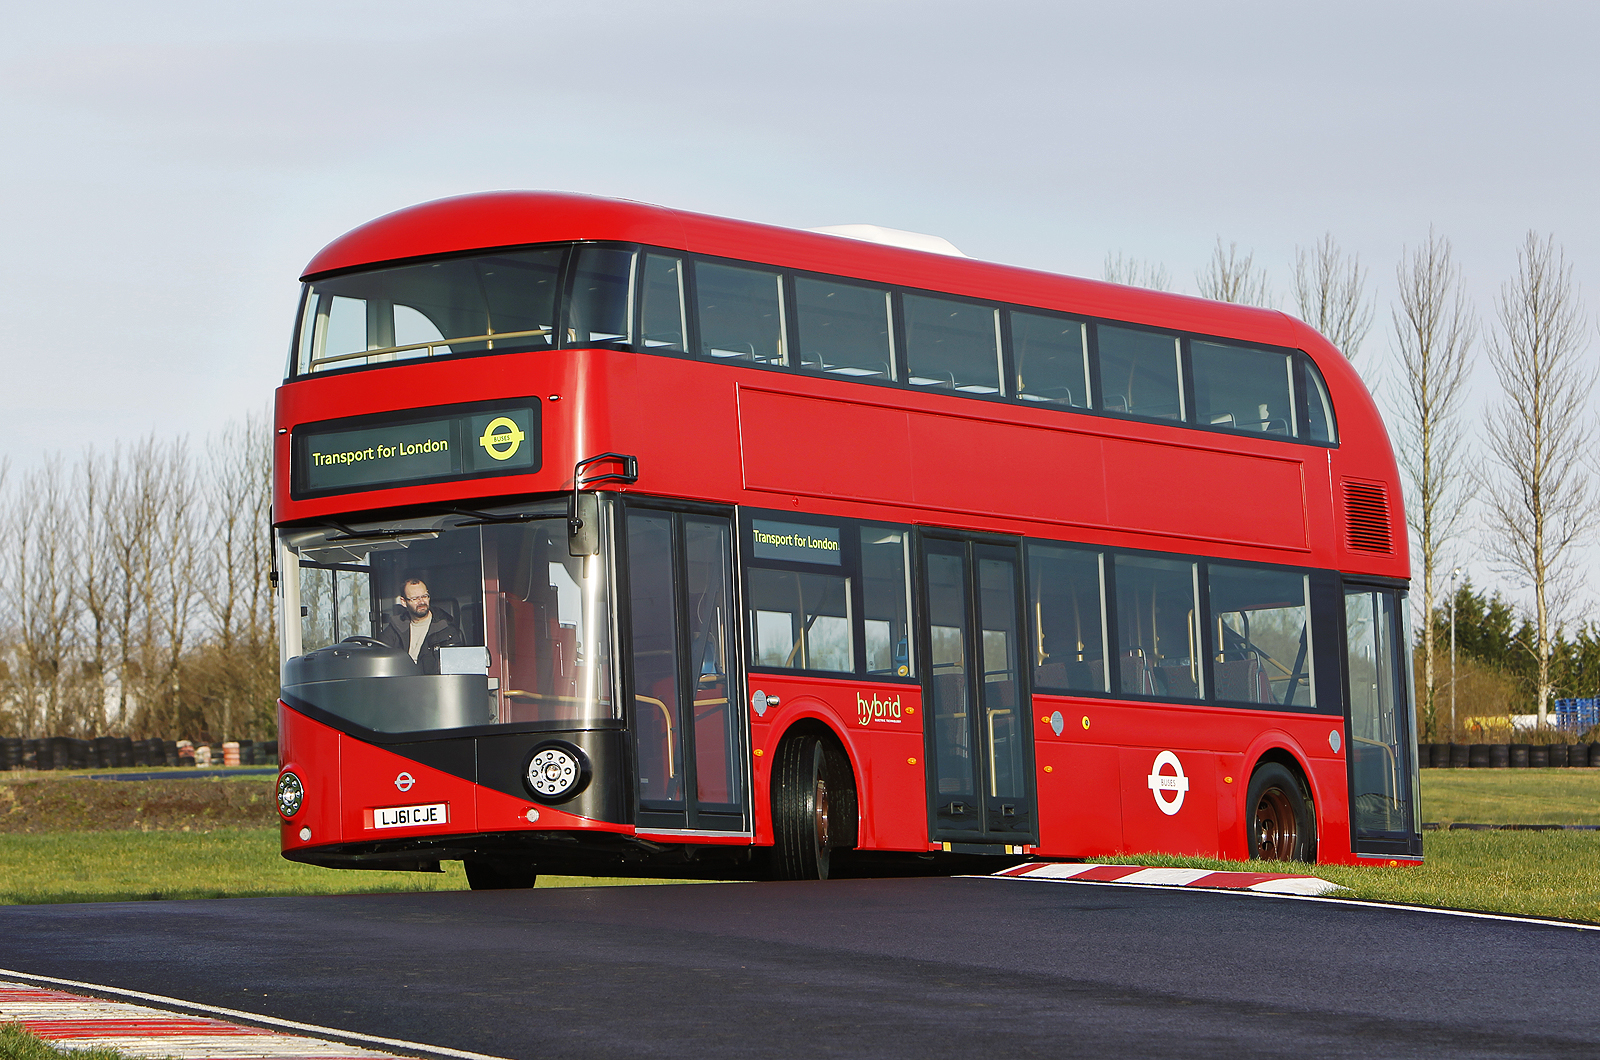 New Bus for London - a képre kattintva galéria nyílik meg!<br>(fotók: autocar.co.uk)